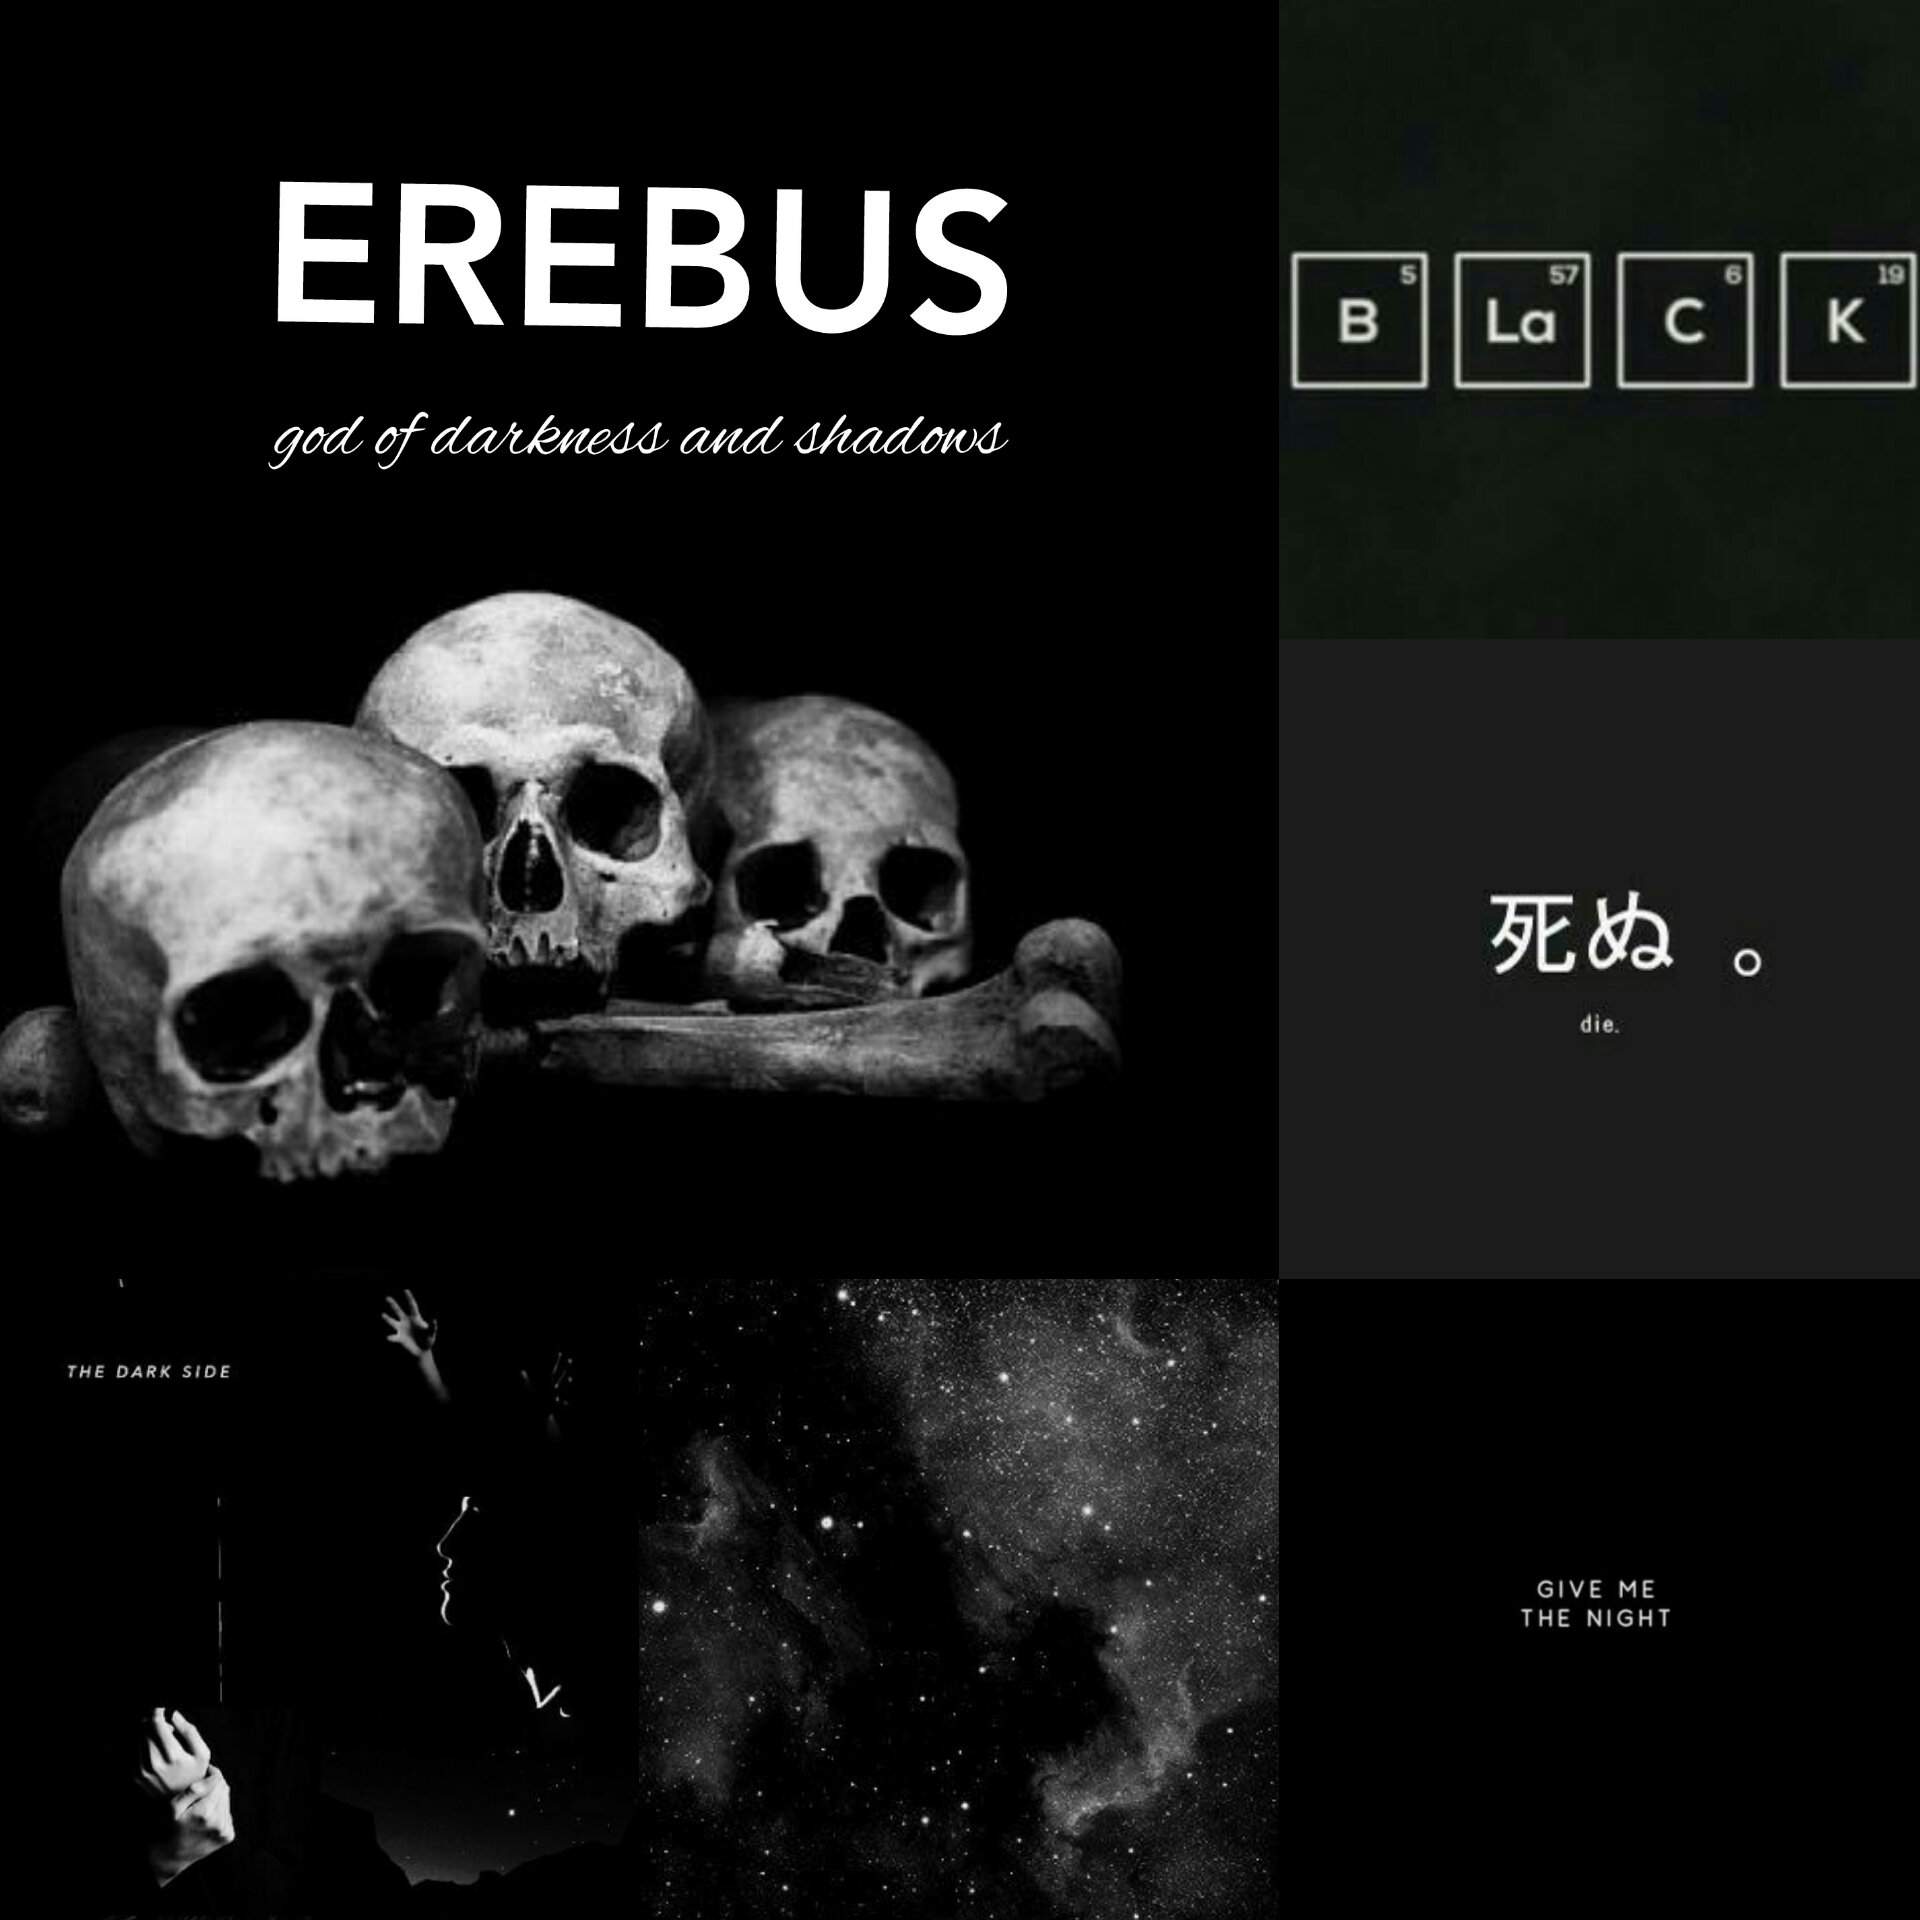 the erebus